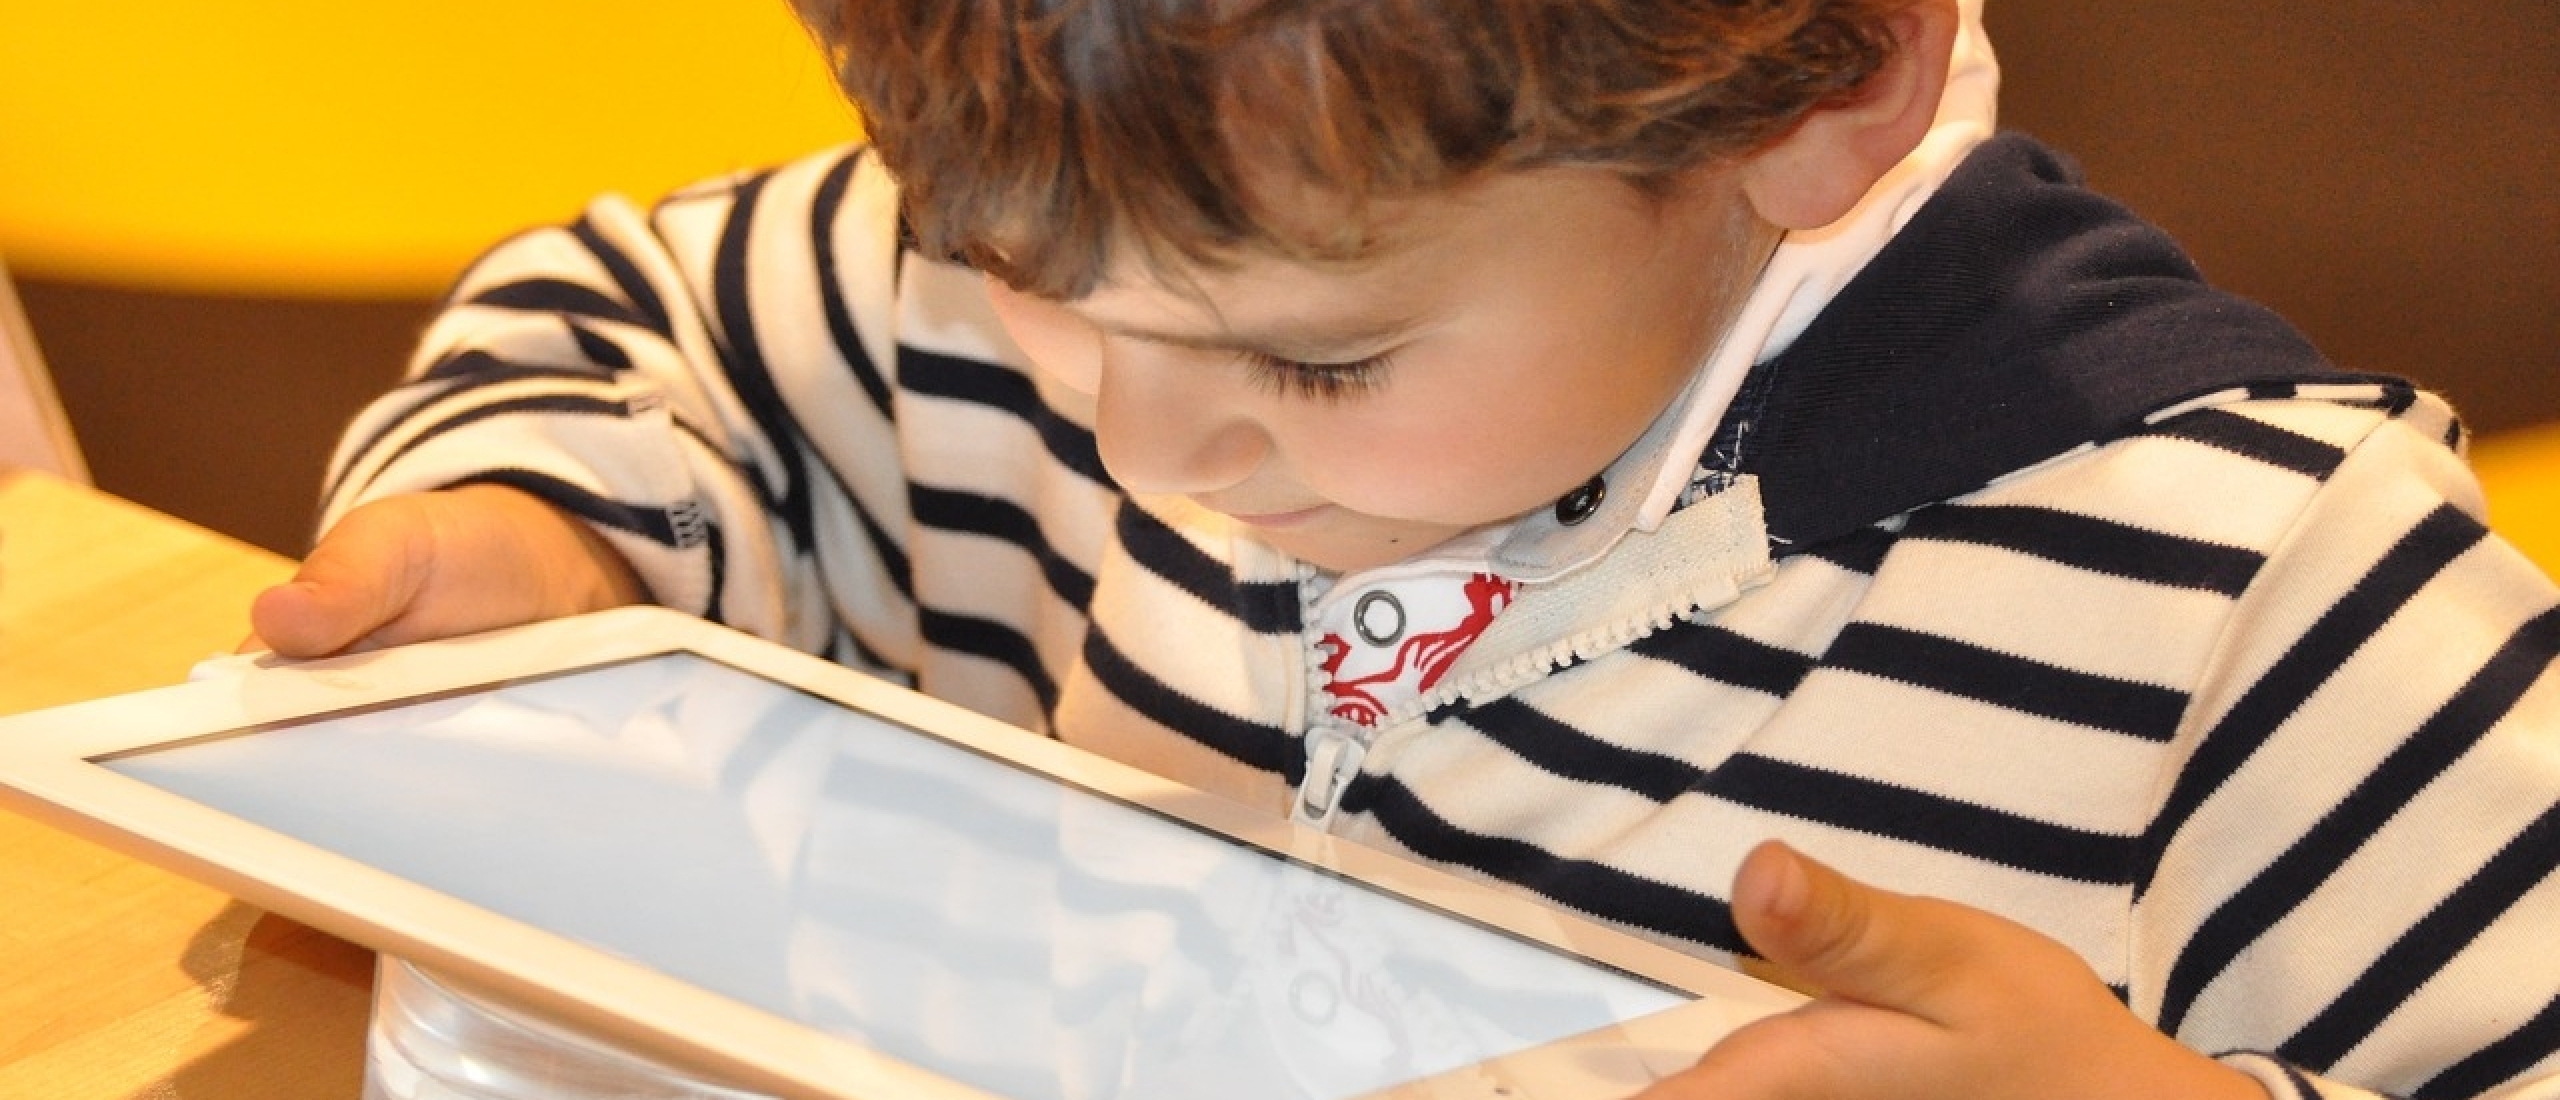 Digitale lessen en schermtijd bij kinderen. (De balans vinden)